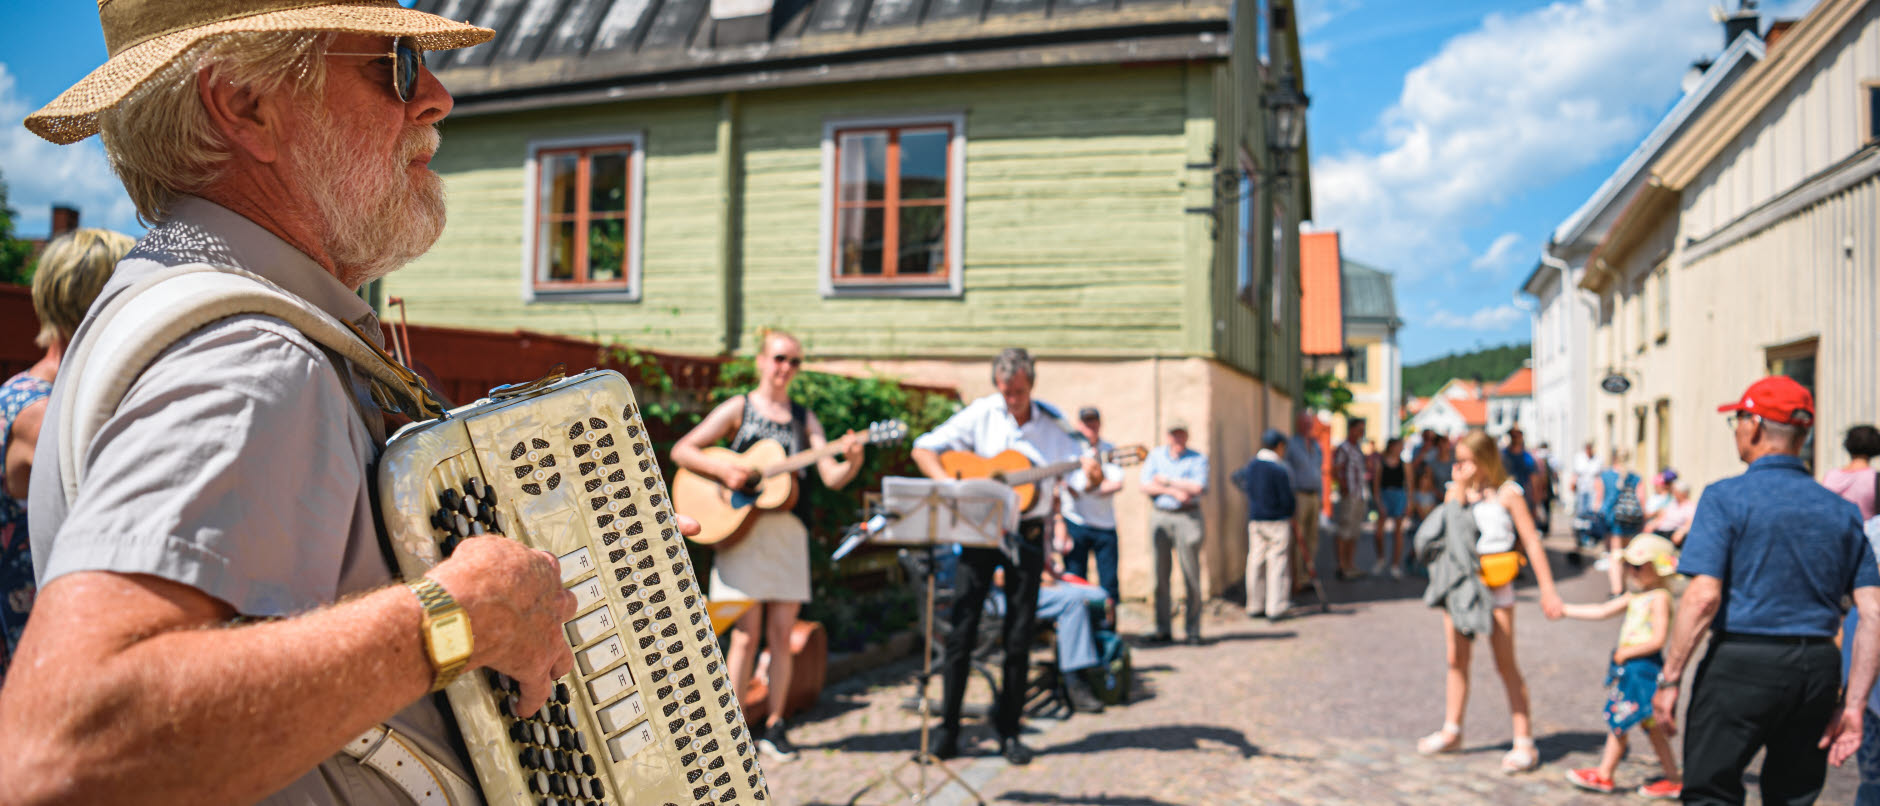 Foto: Bild visar en man som spelar dragspel i förgrunden bakom syns Storgatan med kullestenar och medeltida hus. Det spelas musik och människor ser på.